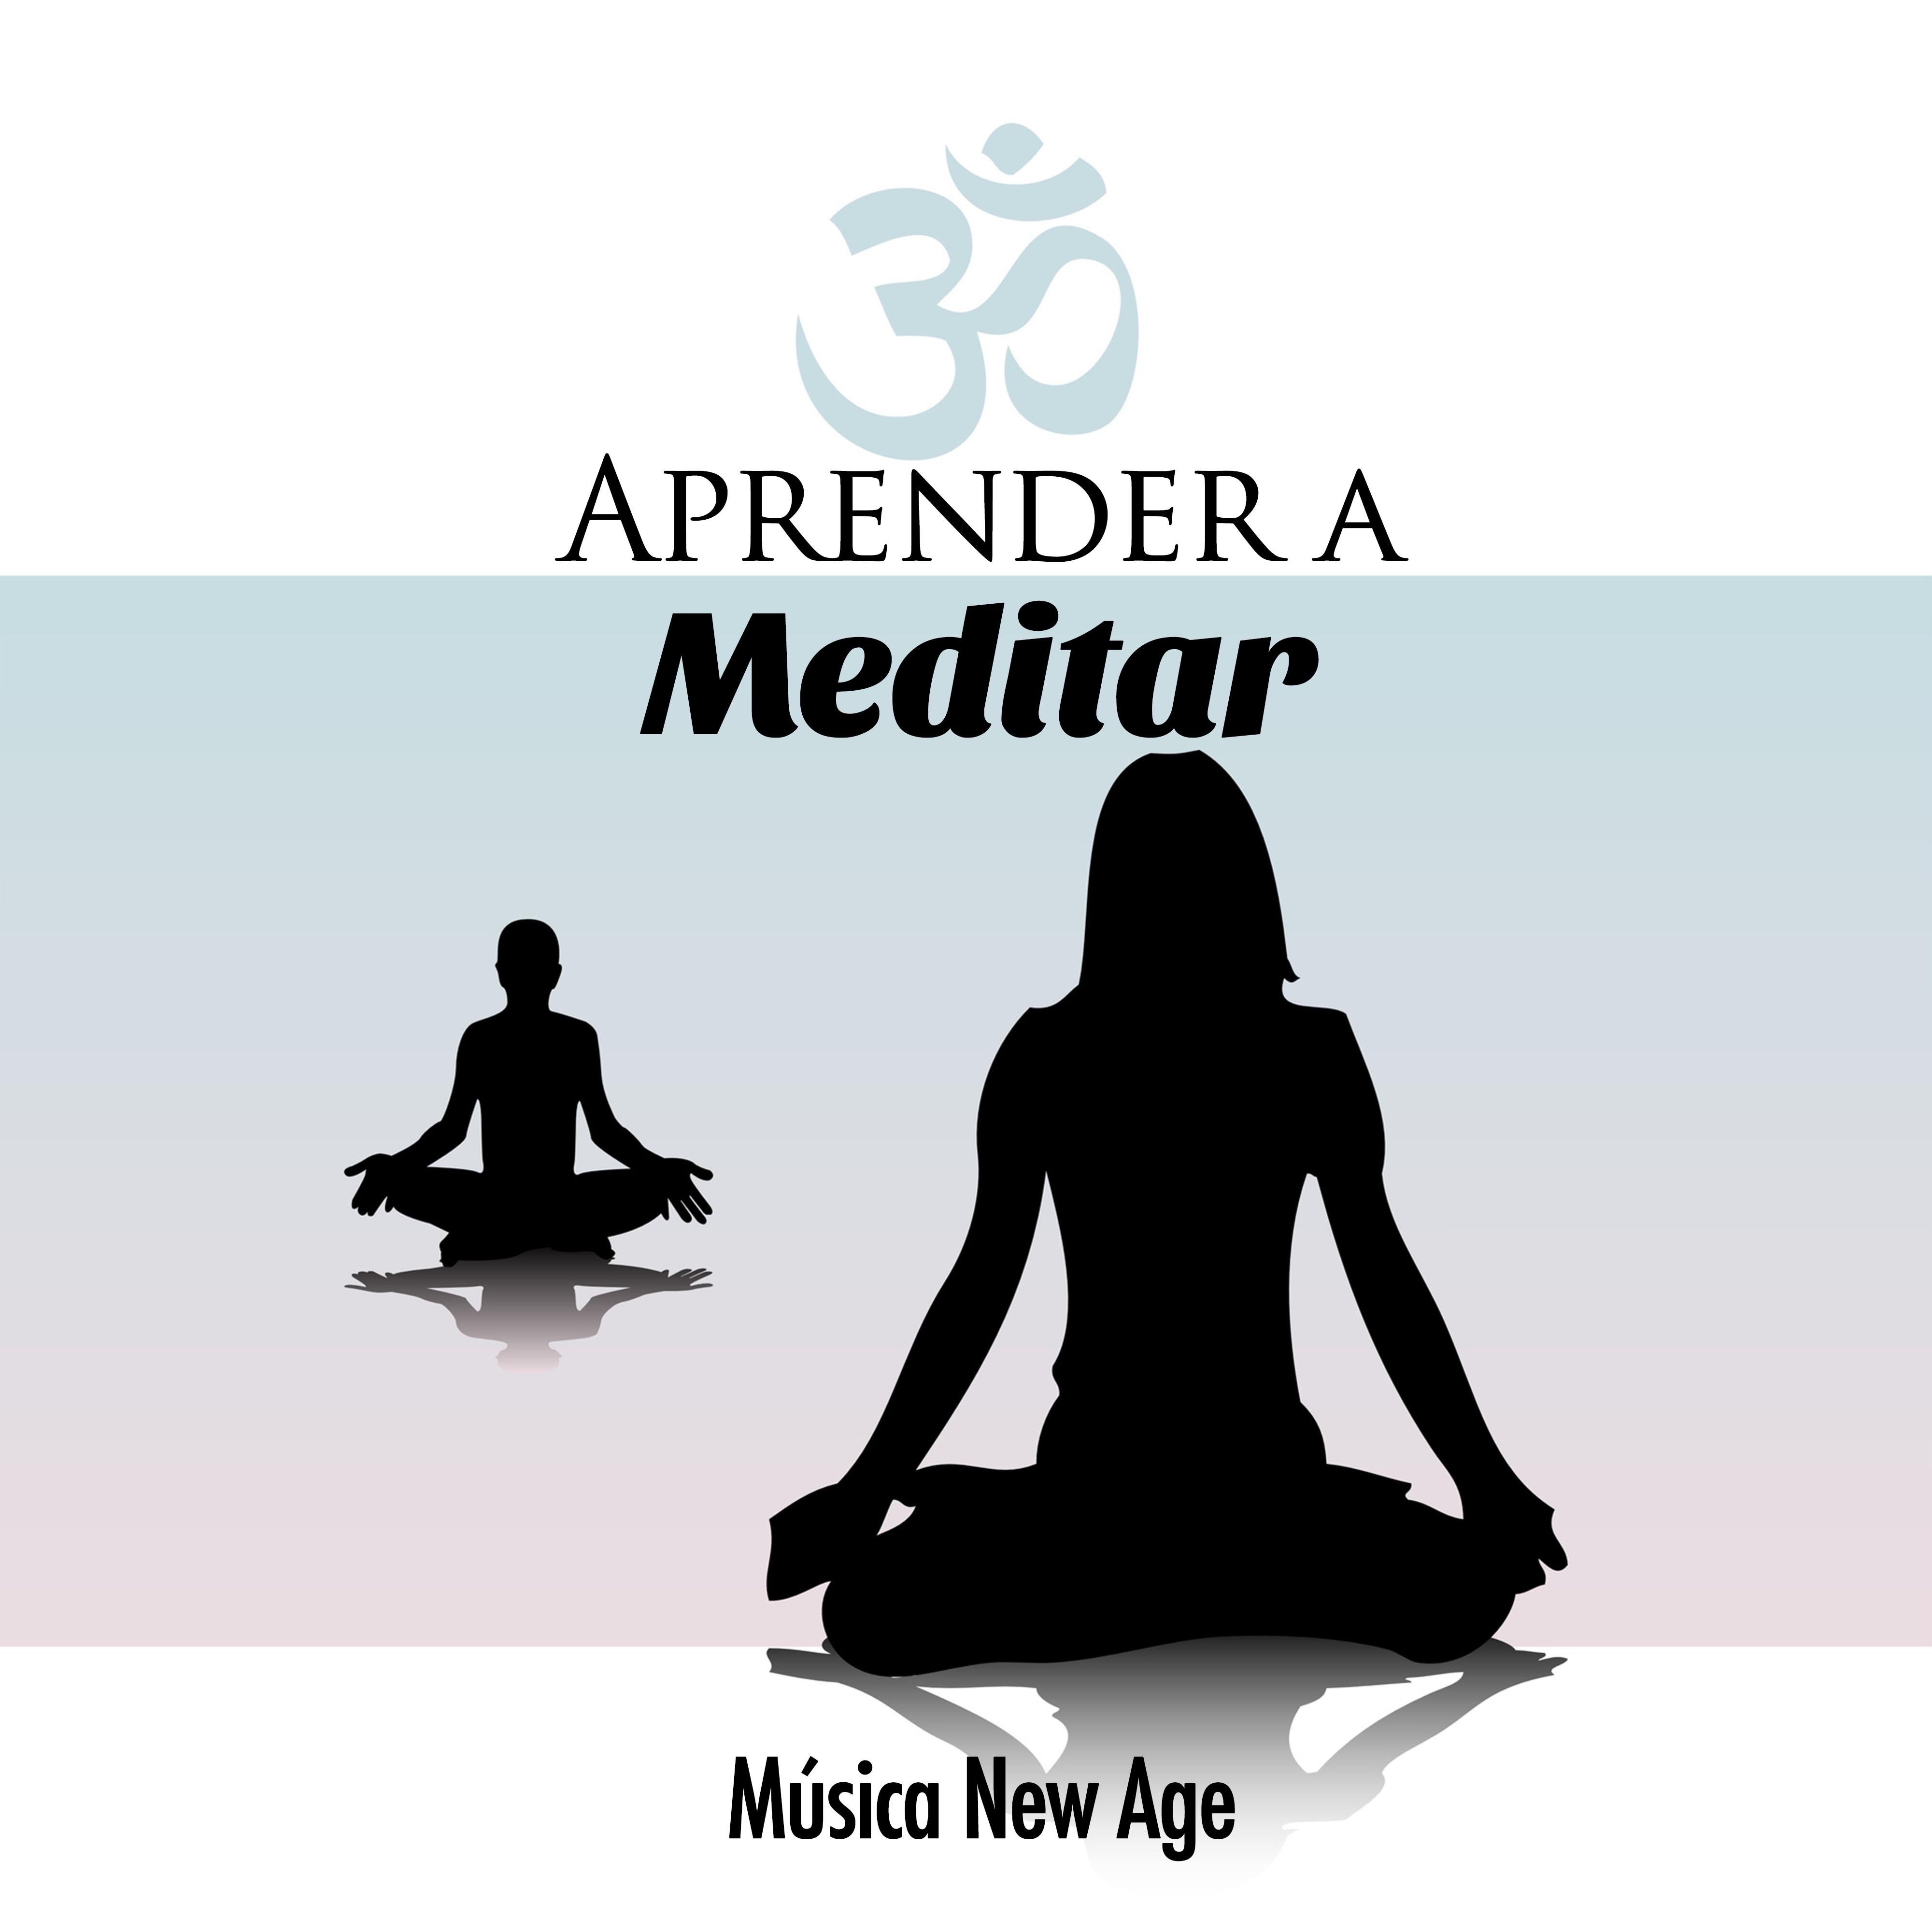 Aprender a Meditar - A Música New Age como Meditação muito Calmante e Relaxante